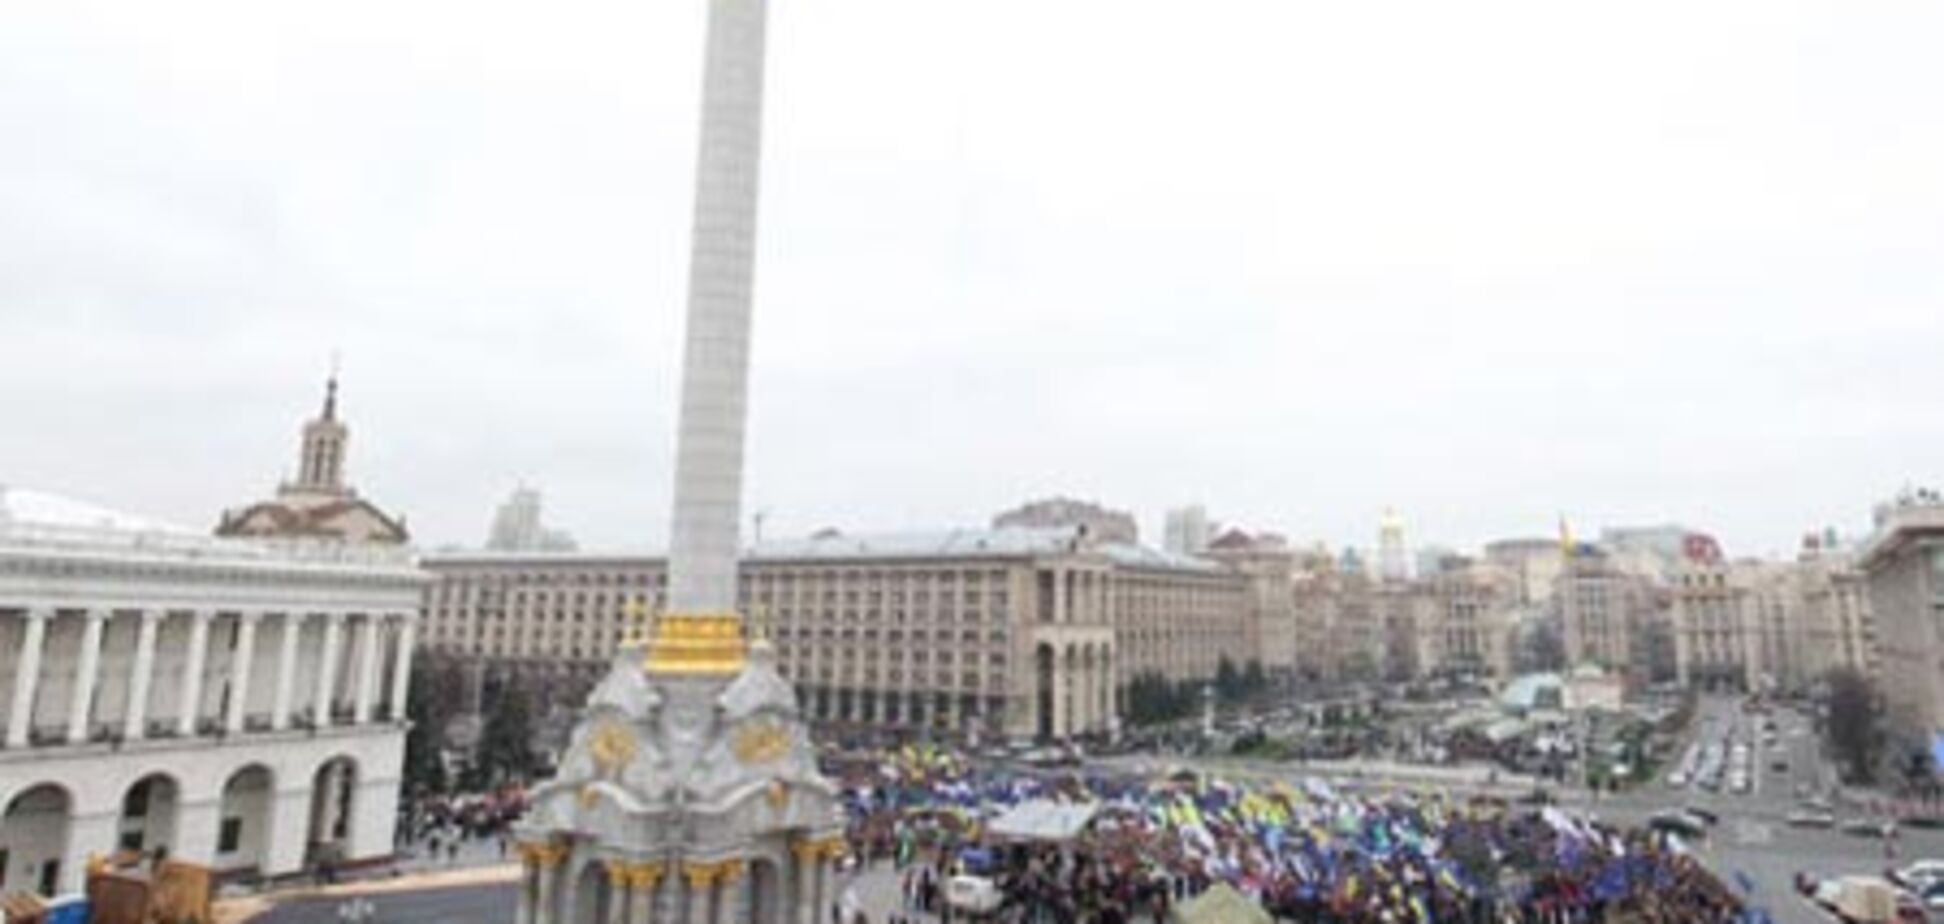 МВД: палаточный городок на Майдане будет демонтирован